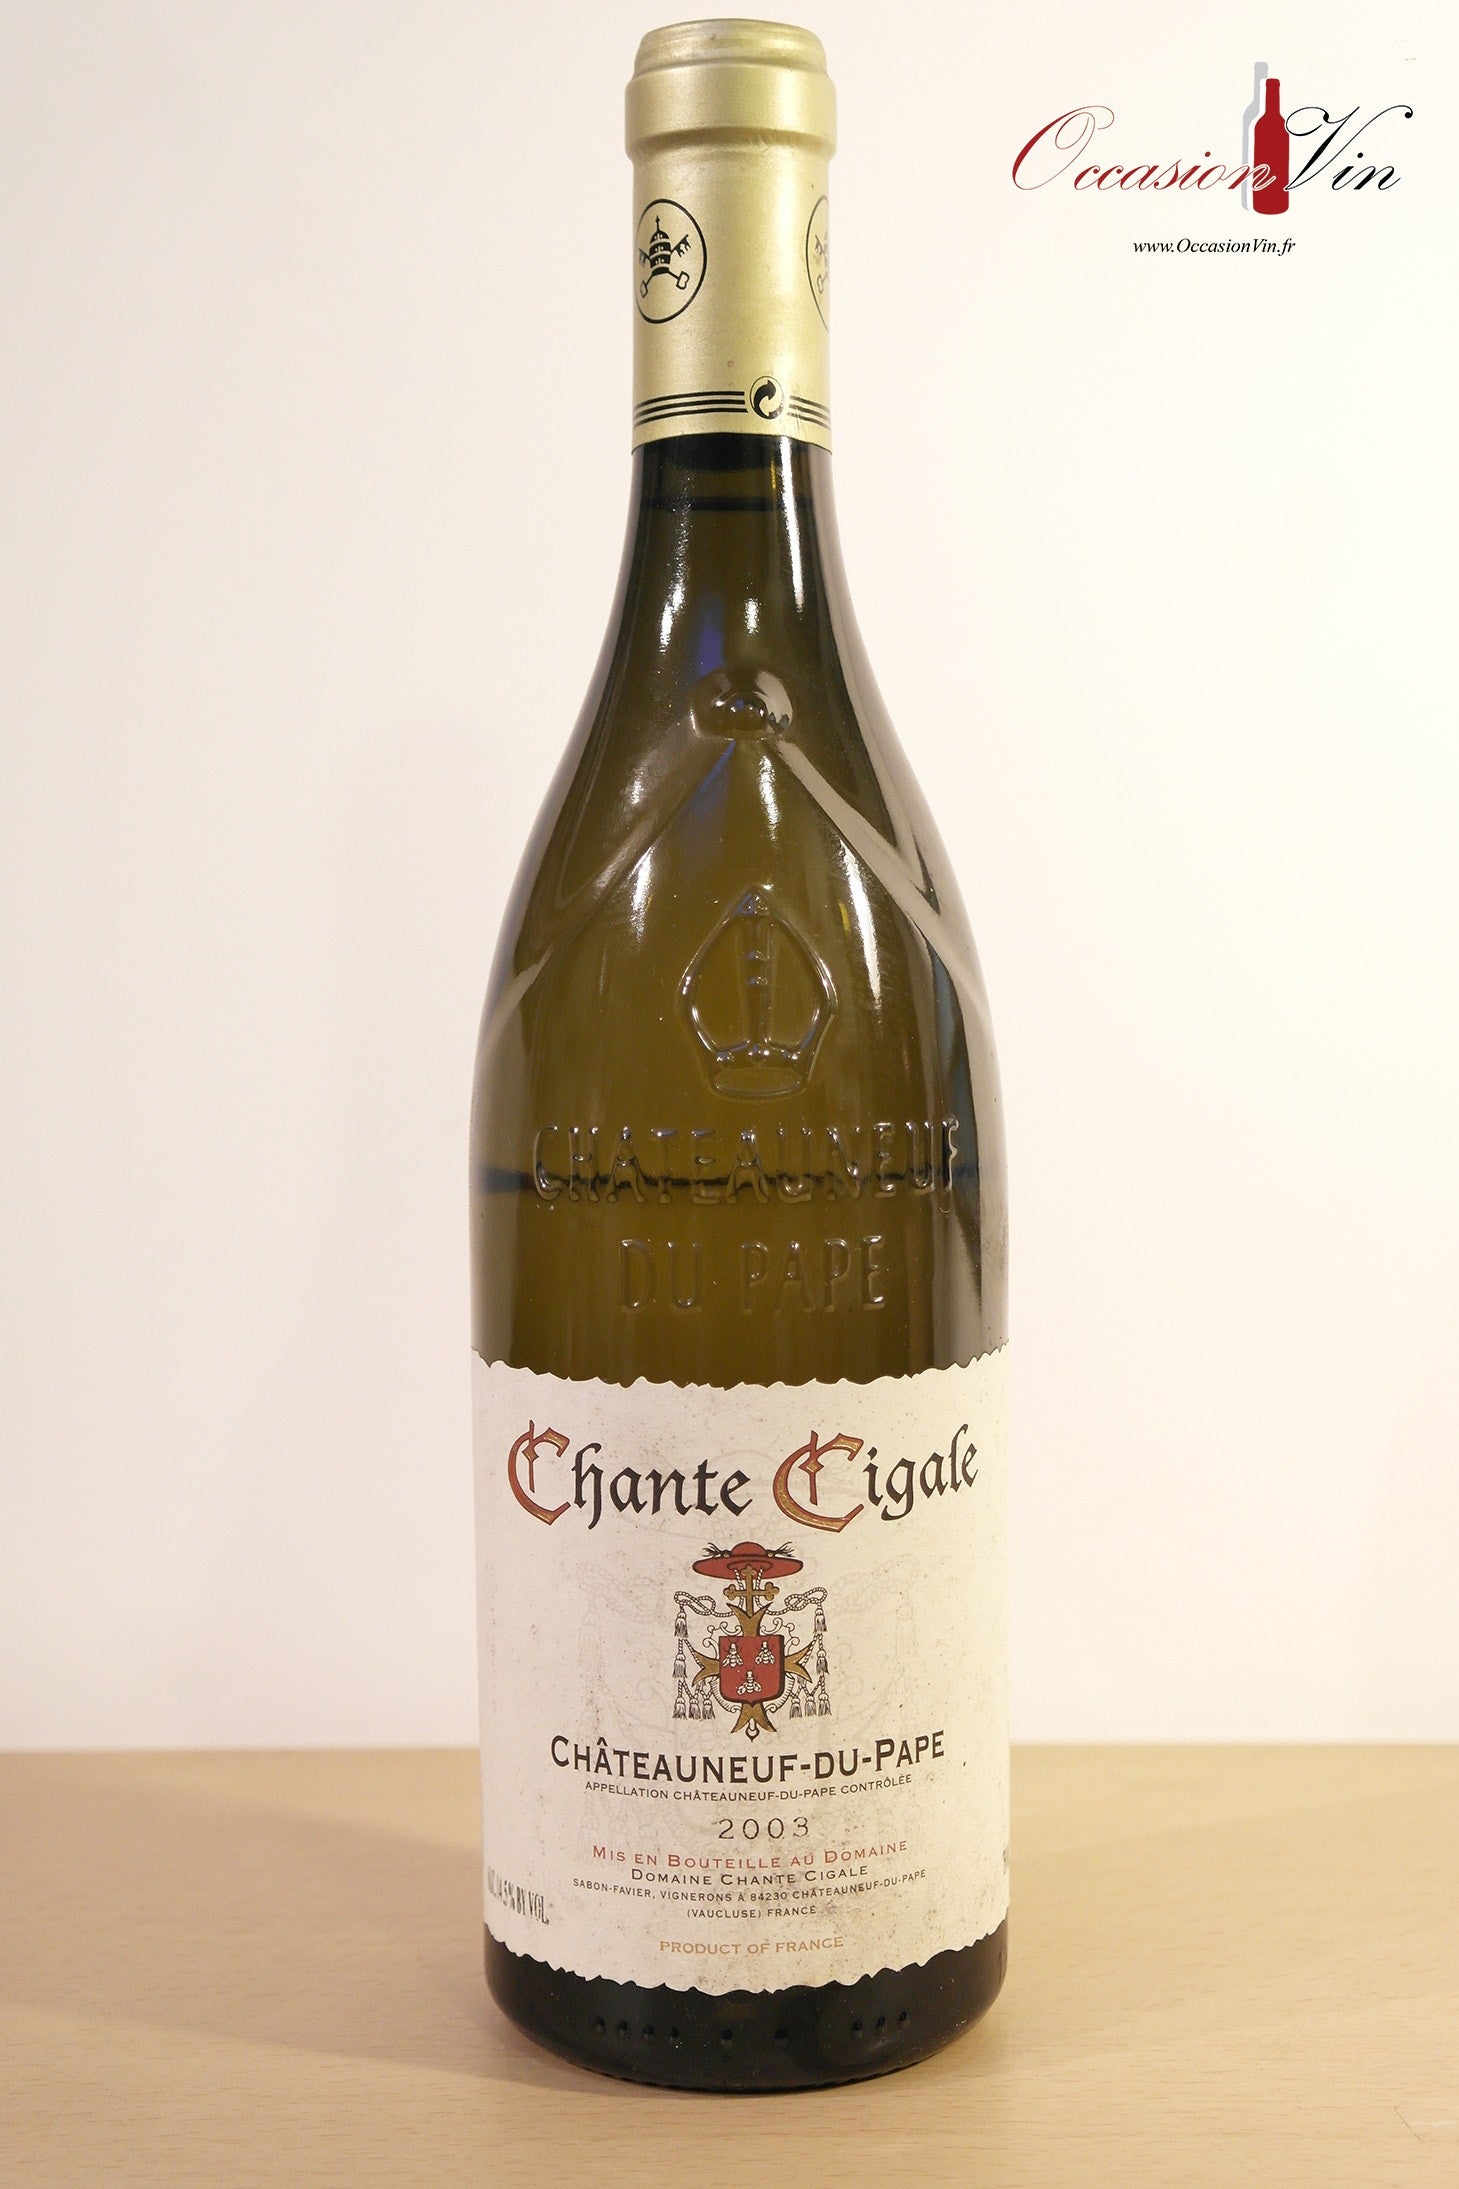 Chante Cigale Châteauneuf-du-Pape Vin 2003